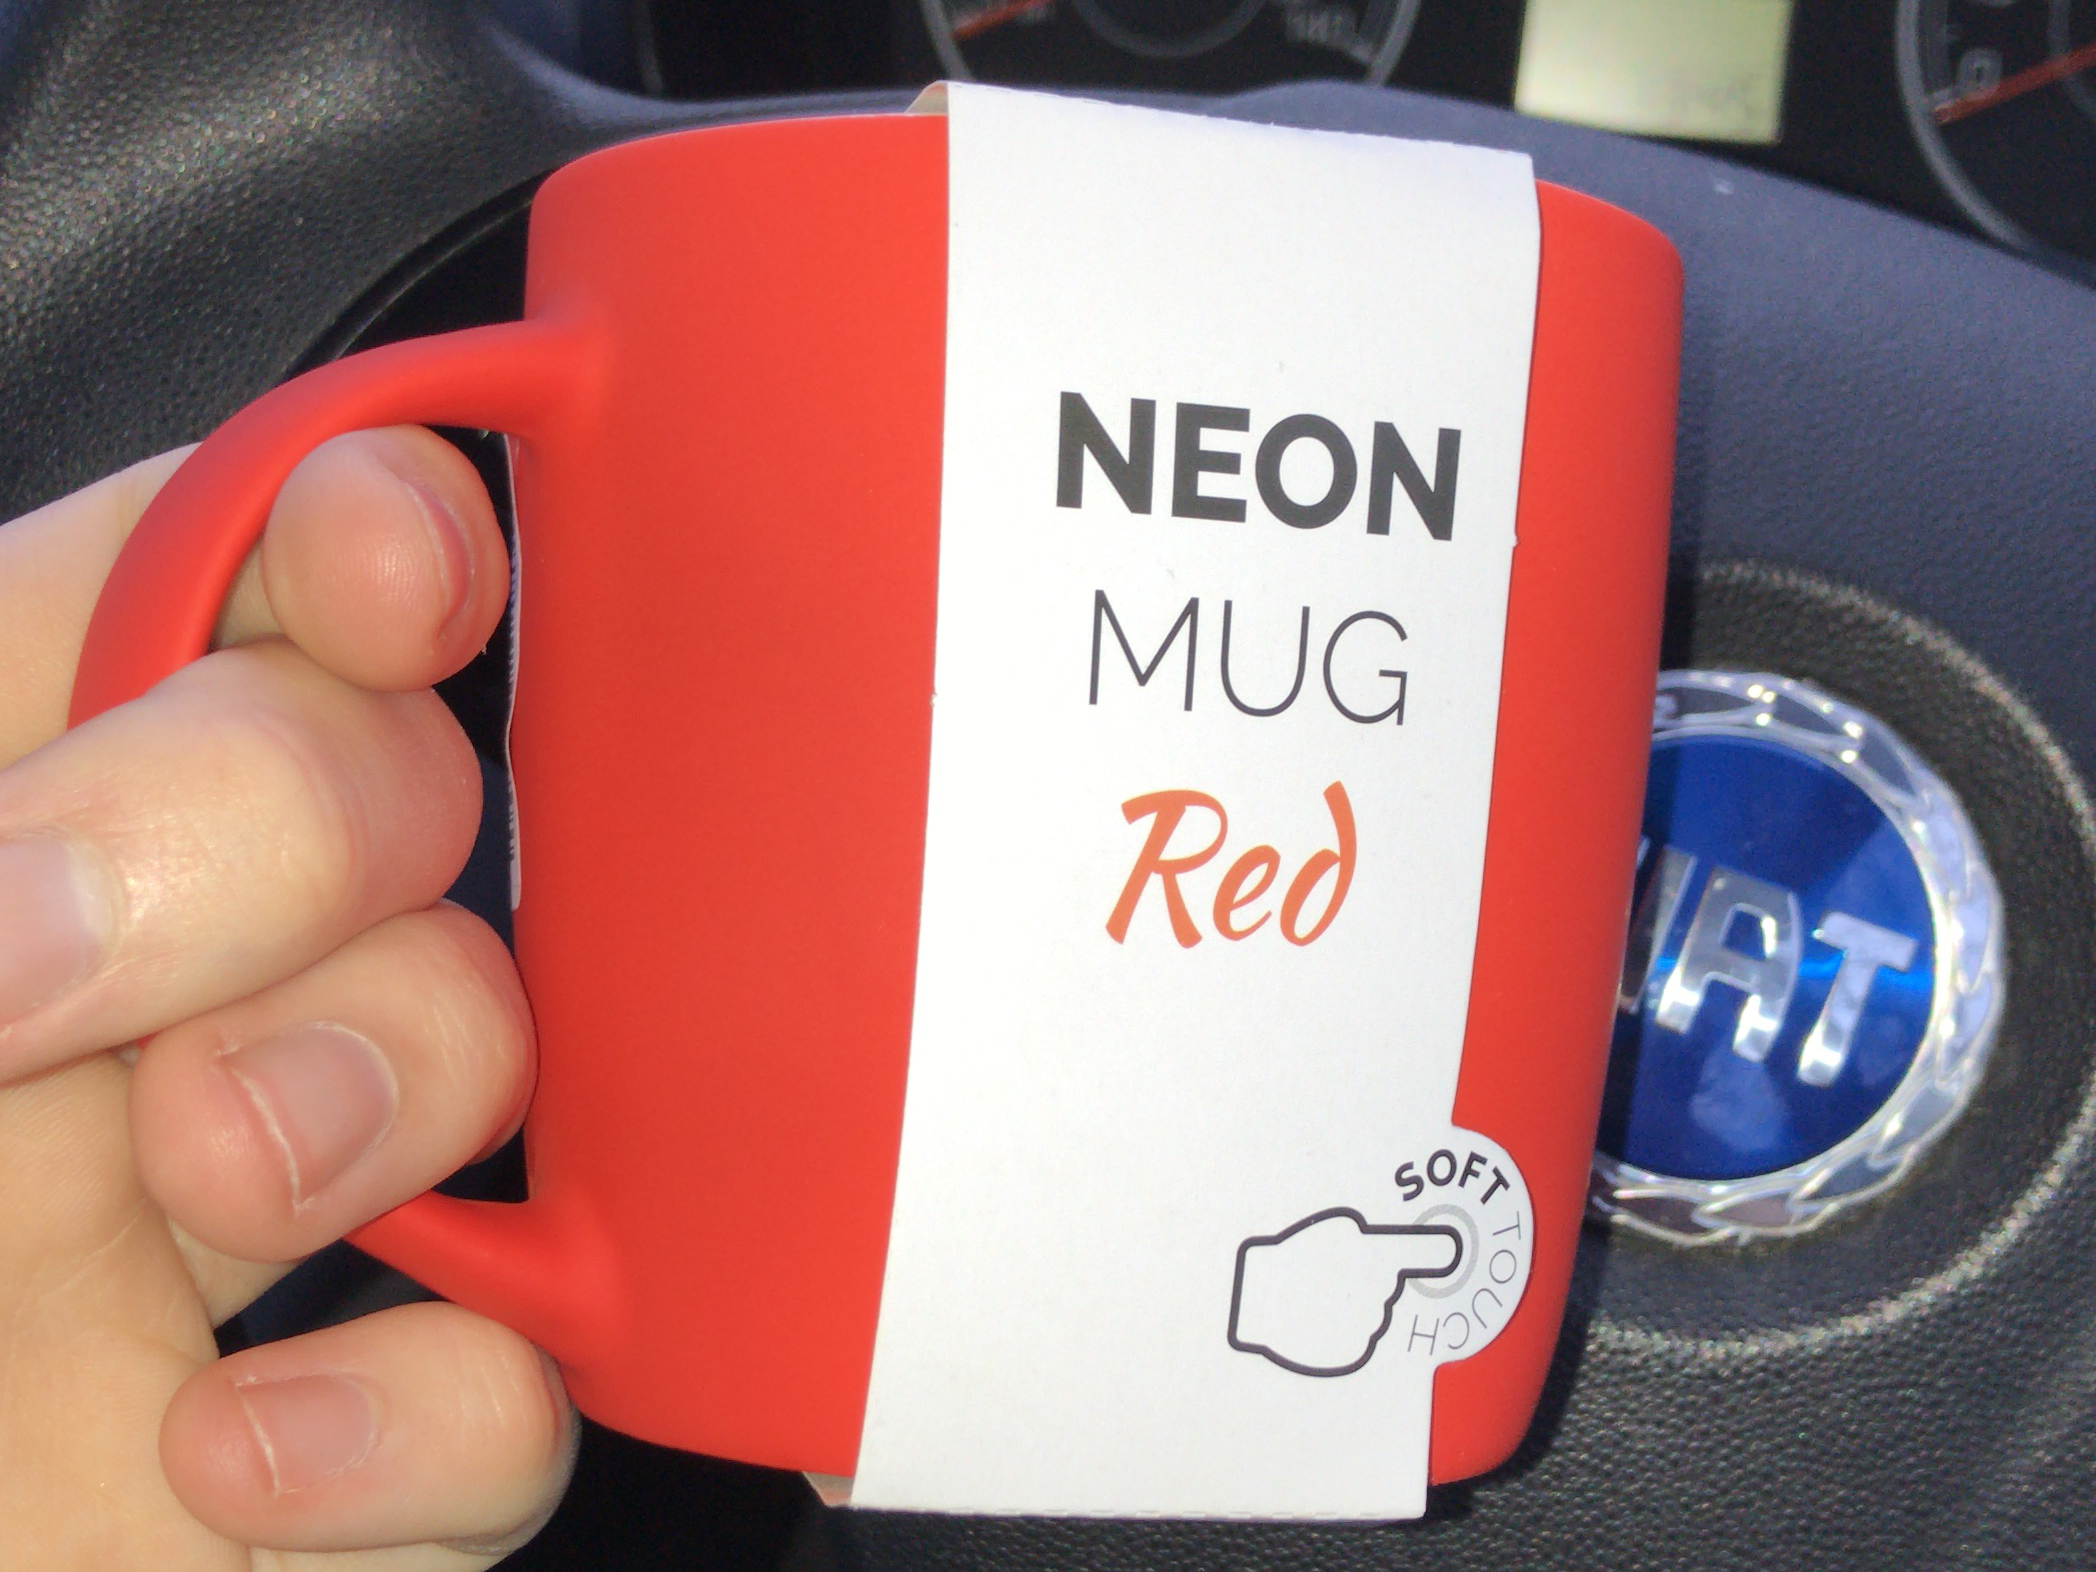 Image: Red mug